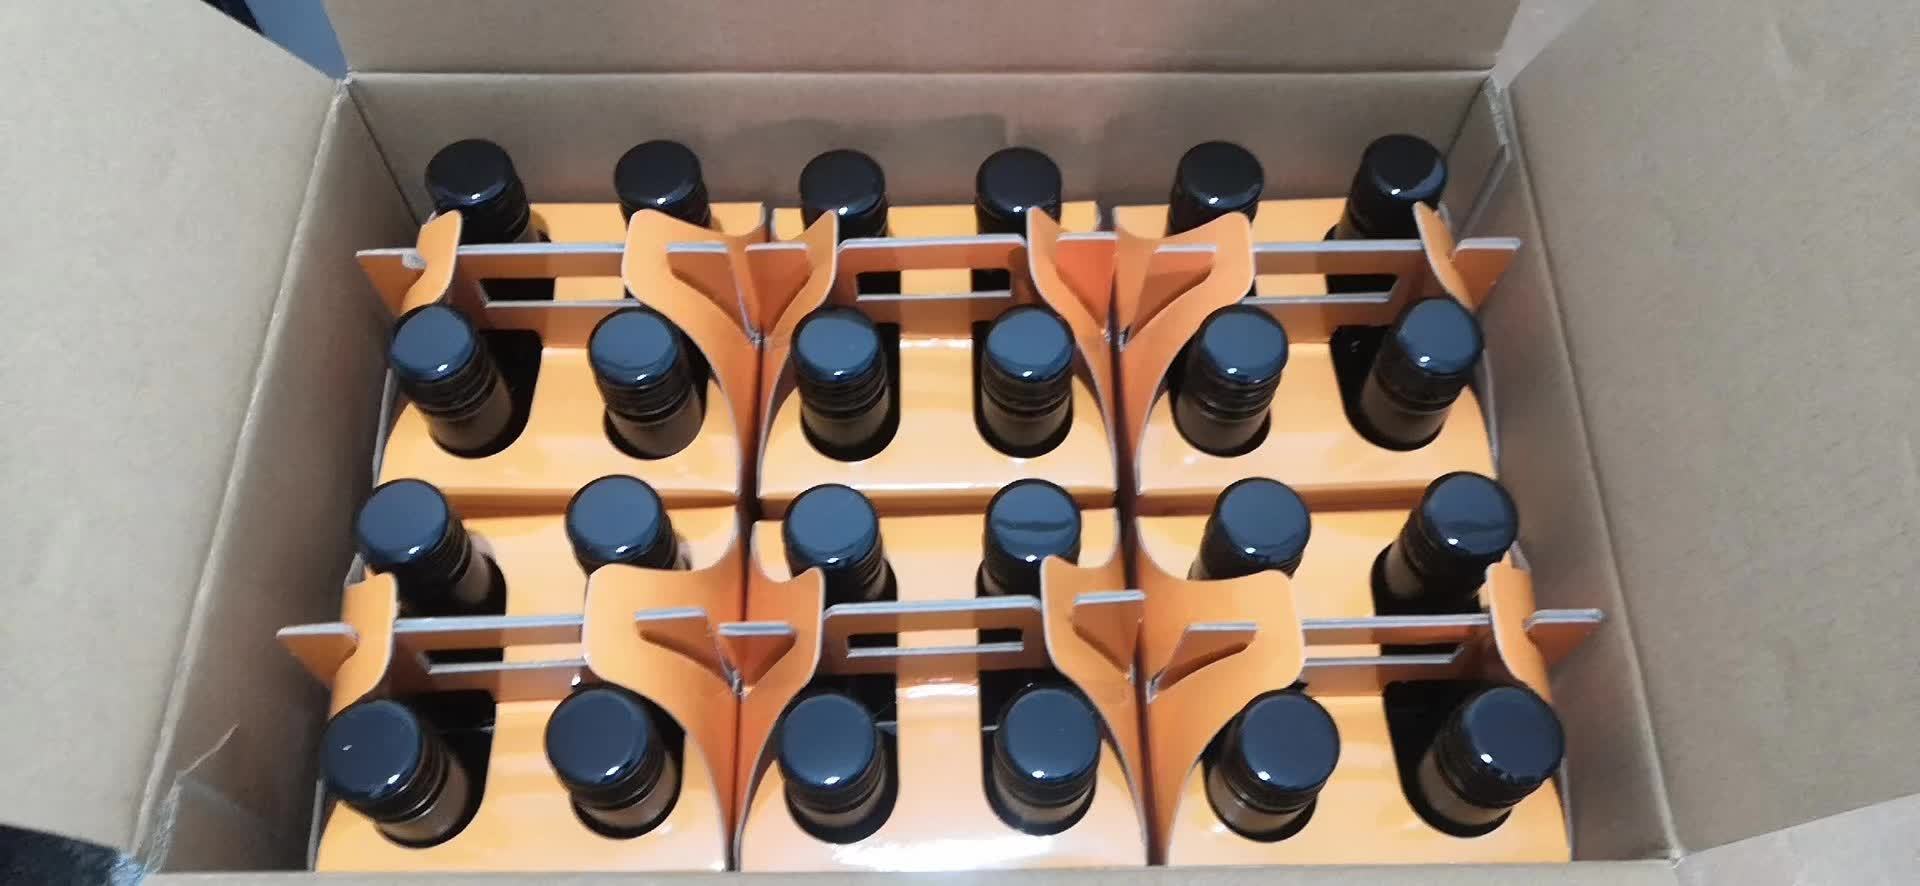 上海万耀赛车手系列187ml澳洲女粉带货产品葡萄酒